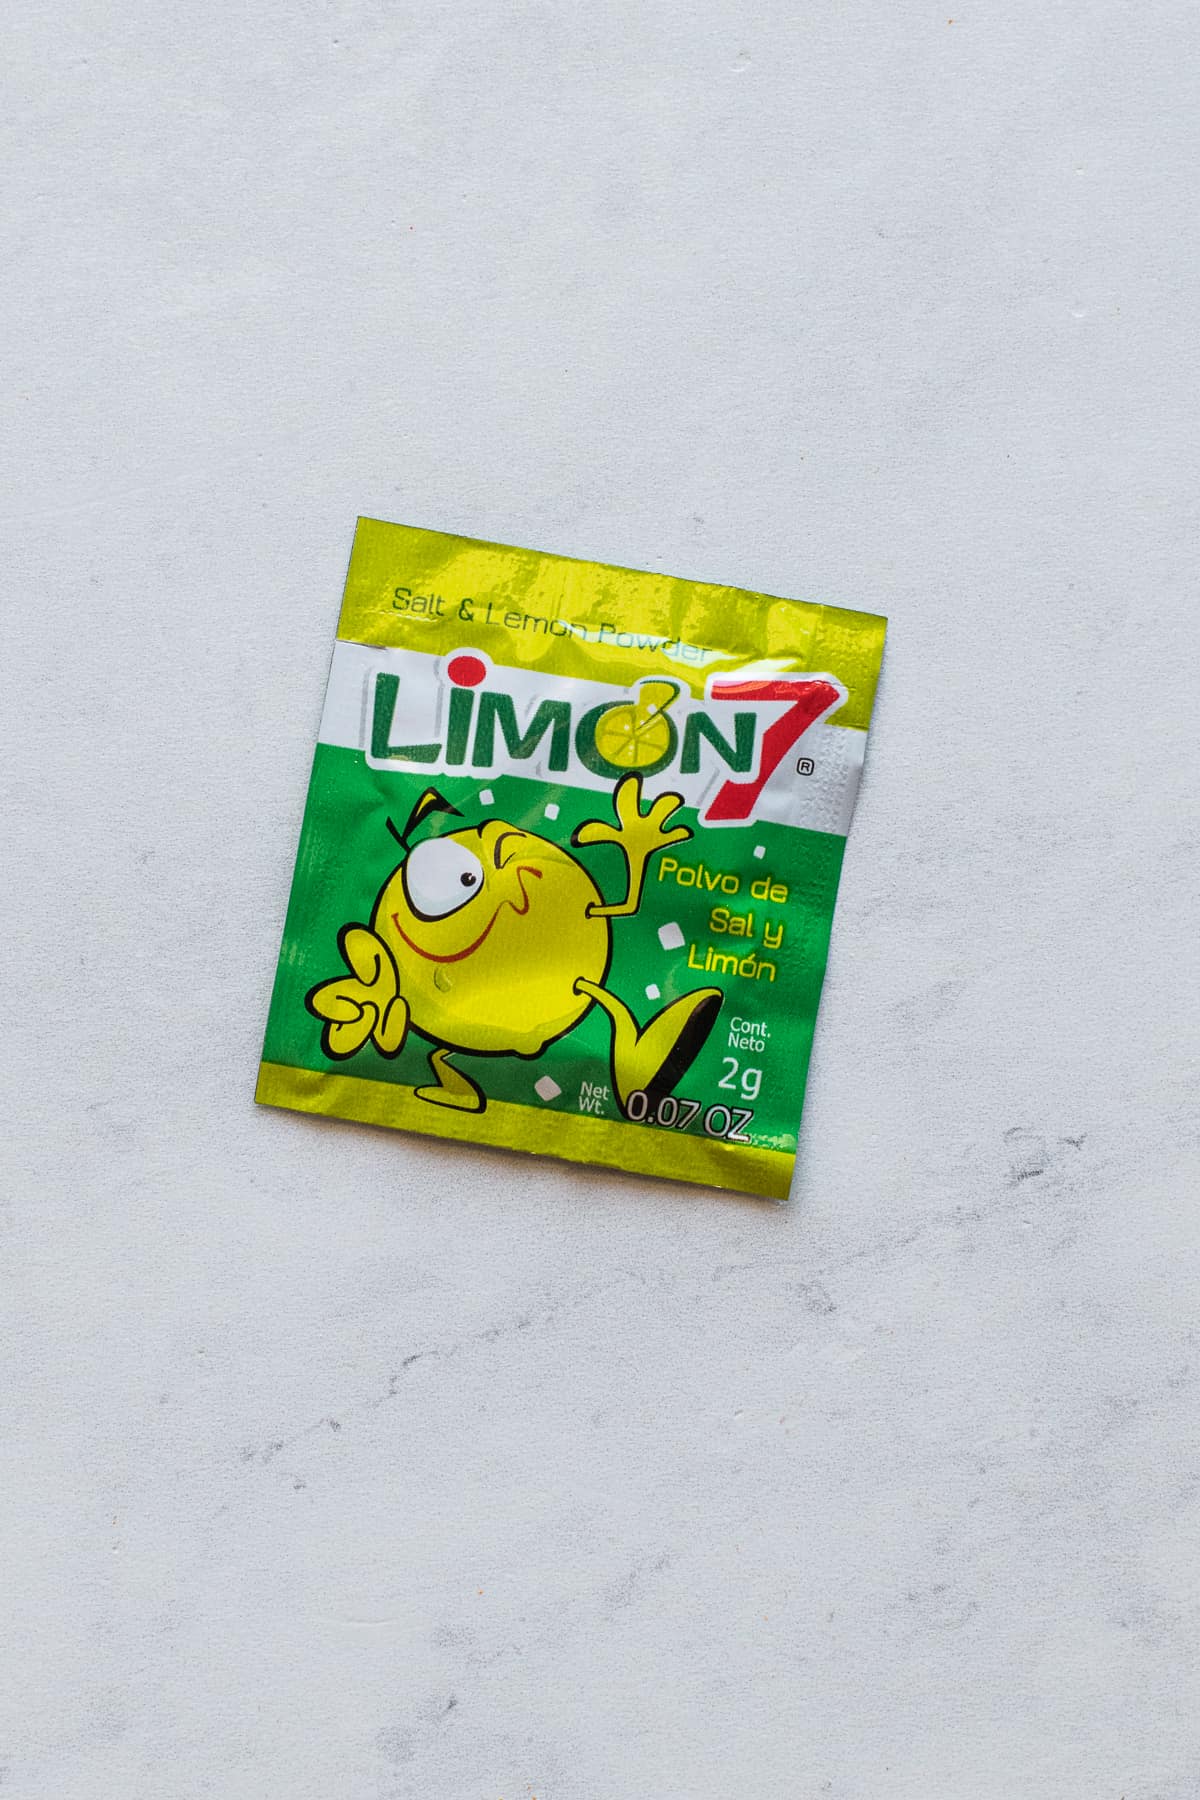 Limon 7 powder